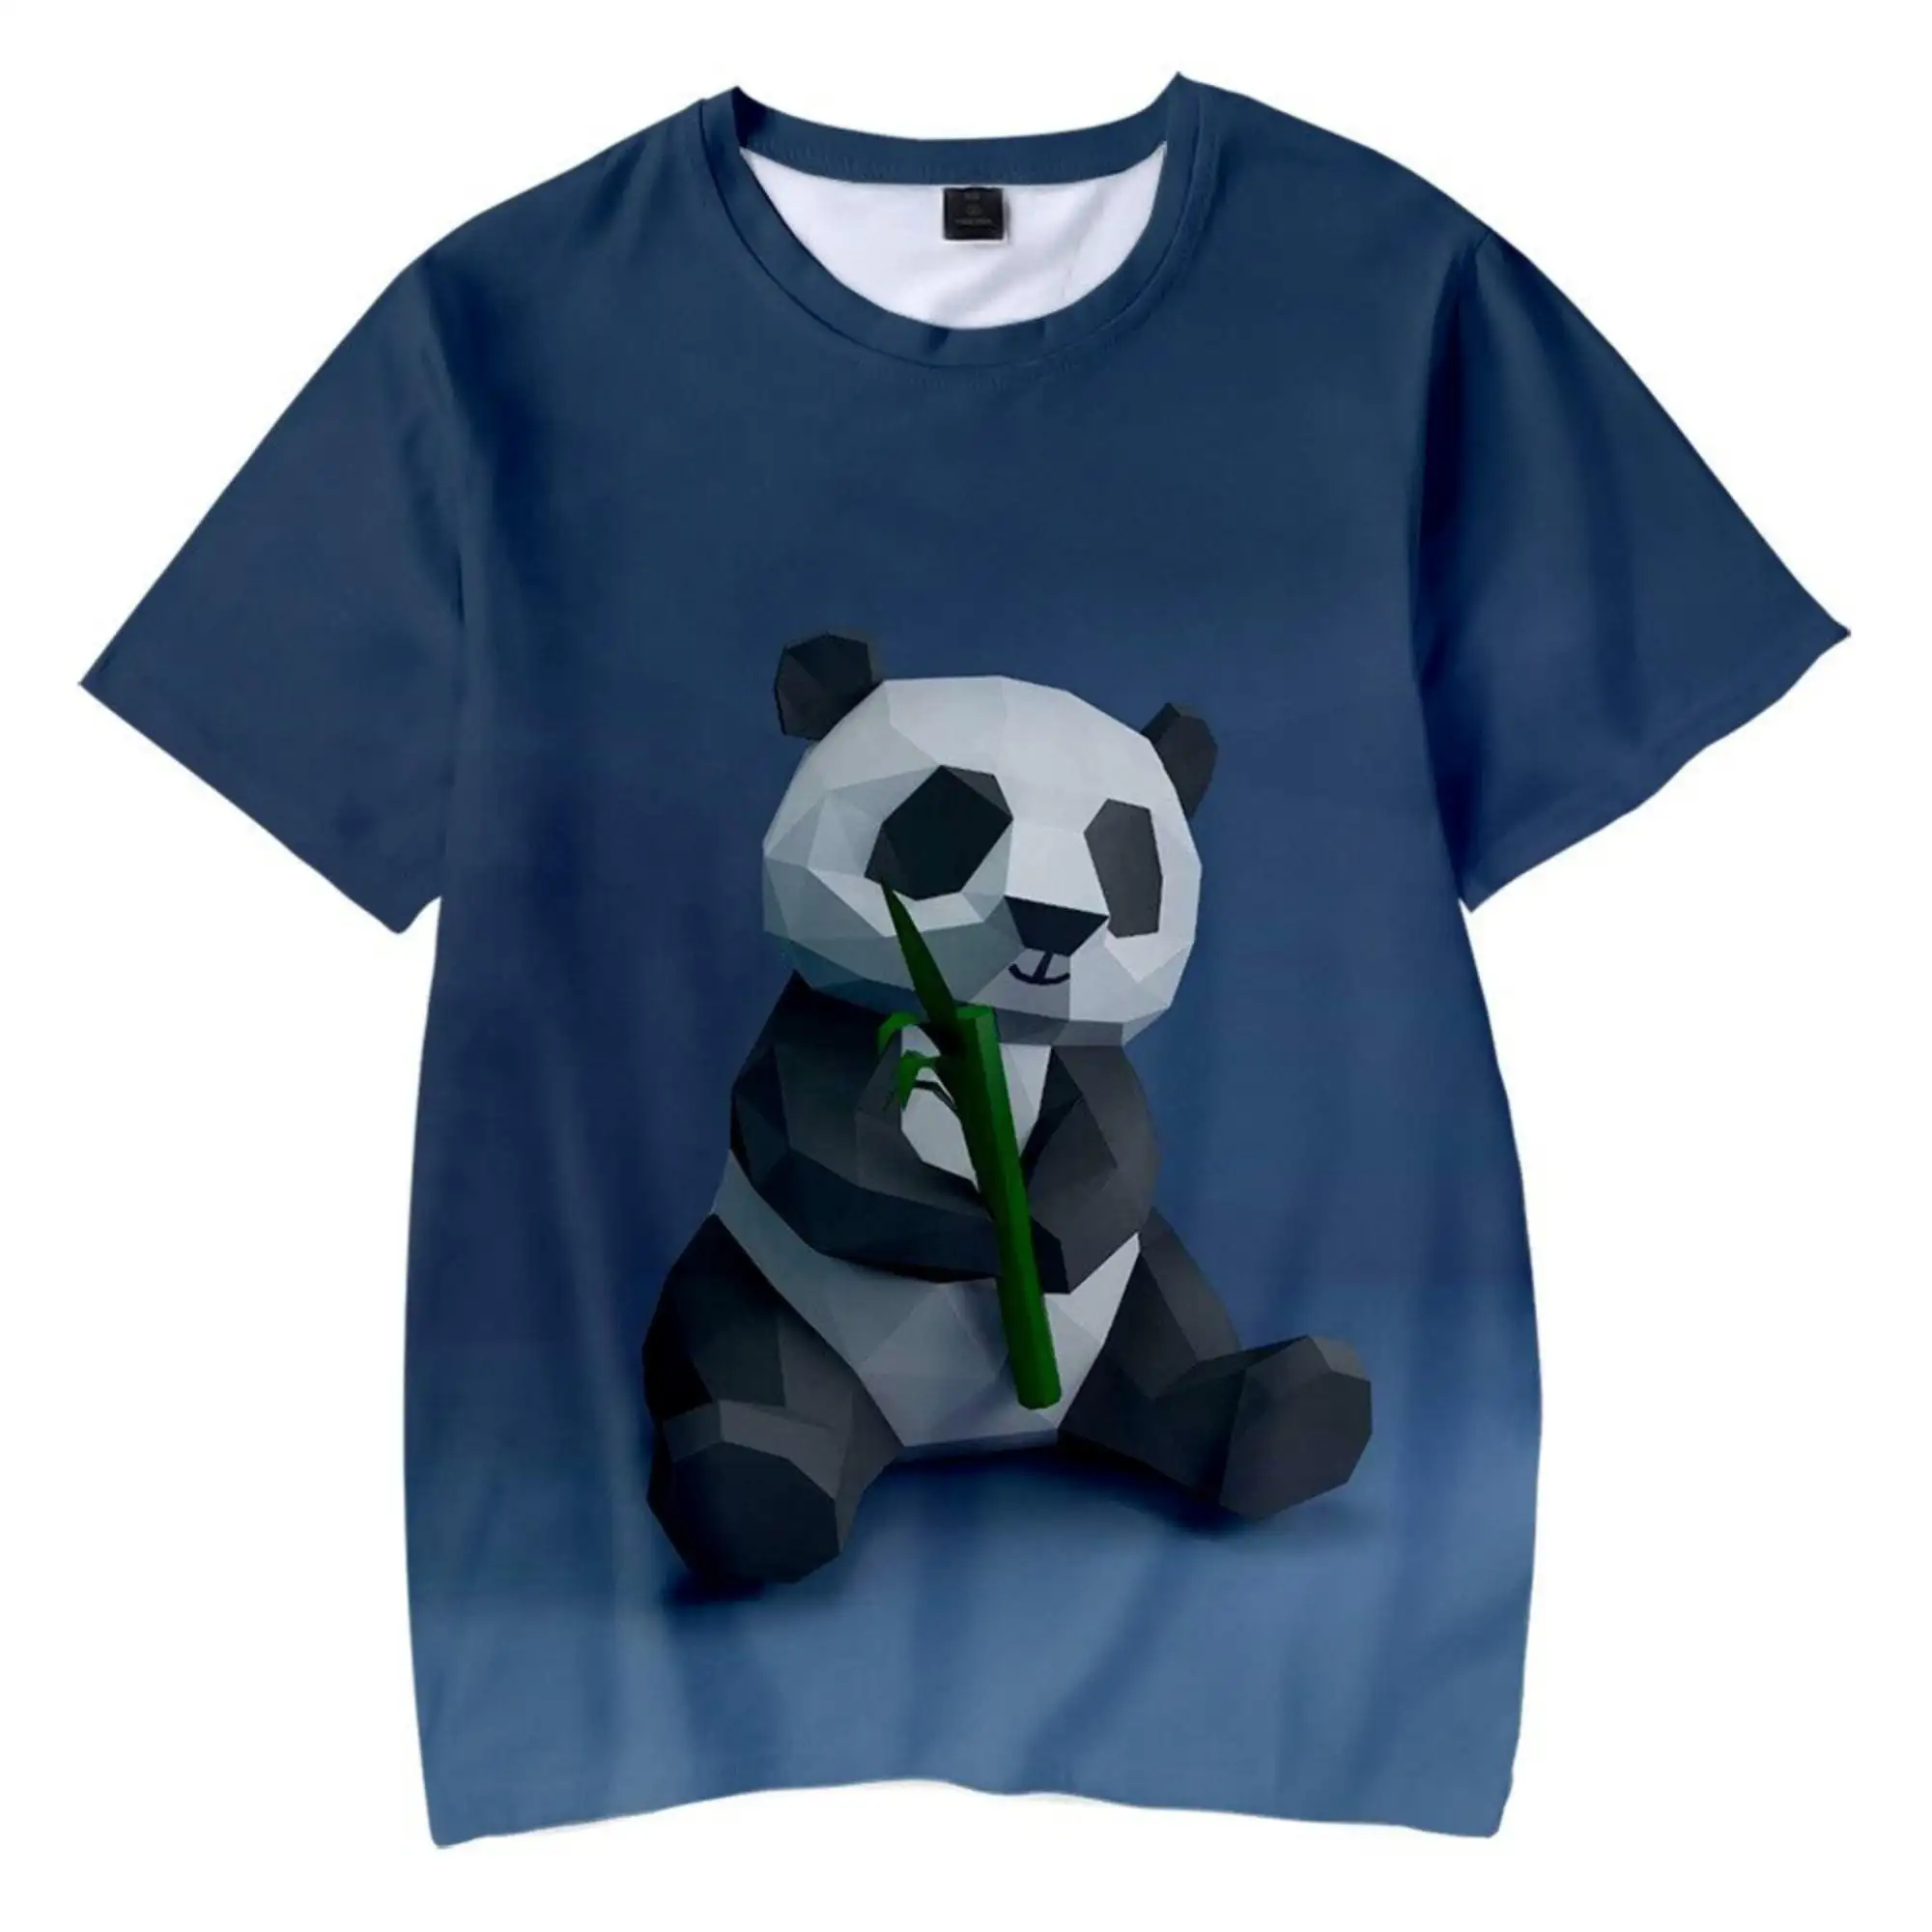 Fabrik Neuankömmling T-Shirts benutzer definierte Baumwolle Jersey attraktiven Stil T-Shirt überall im Digitaldruck angepasst